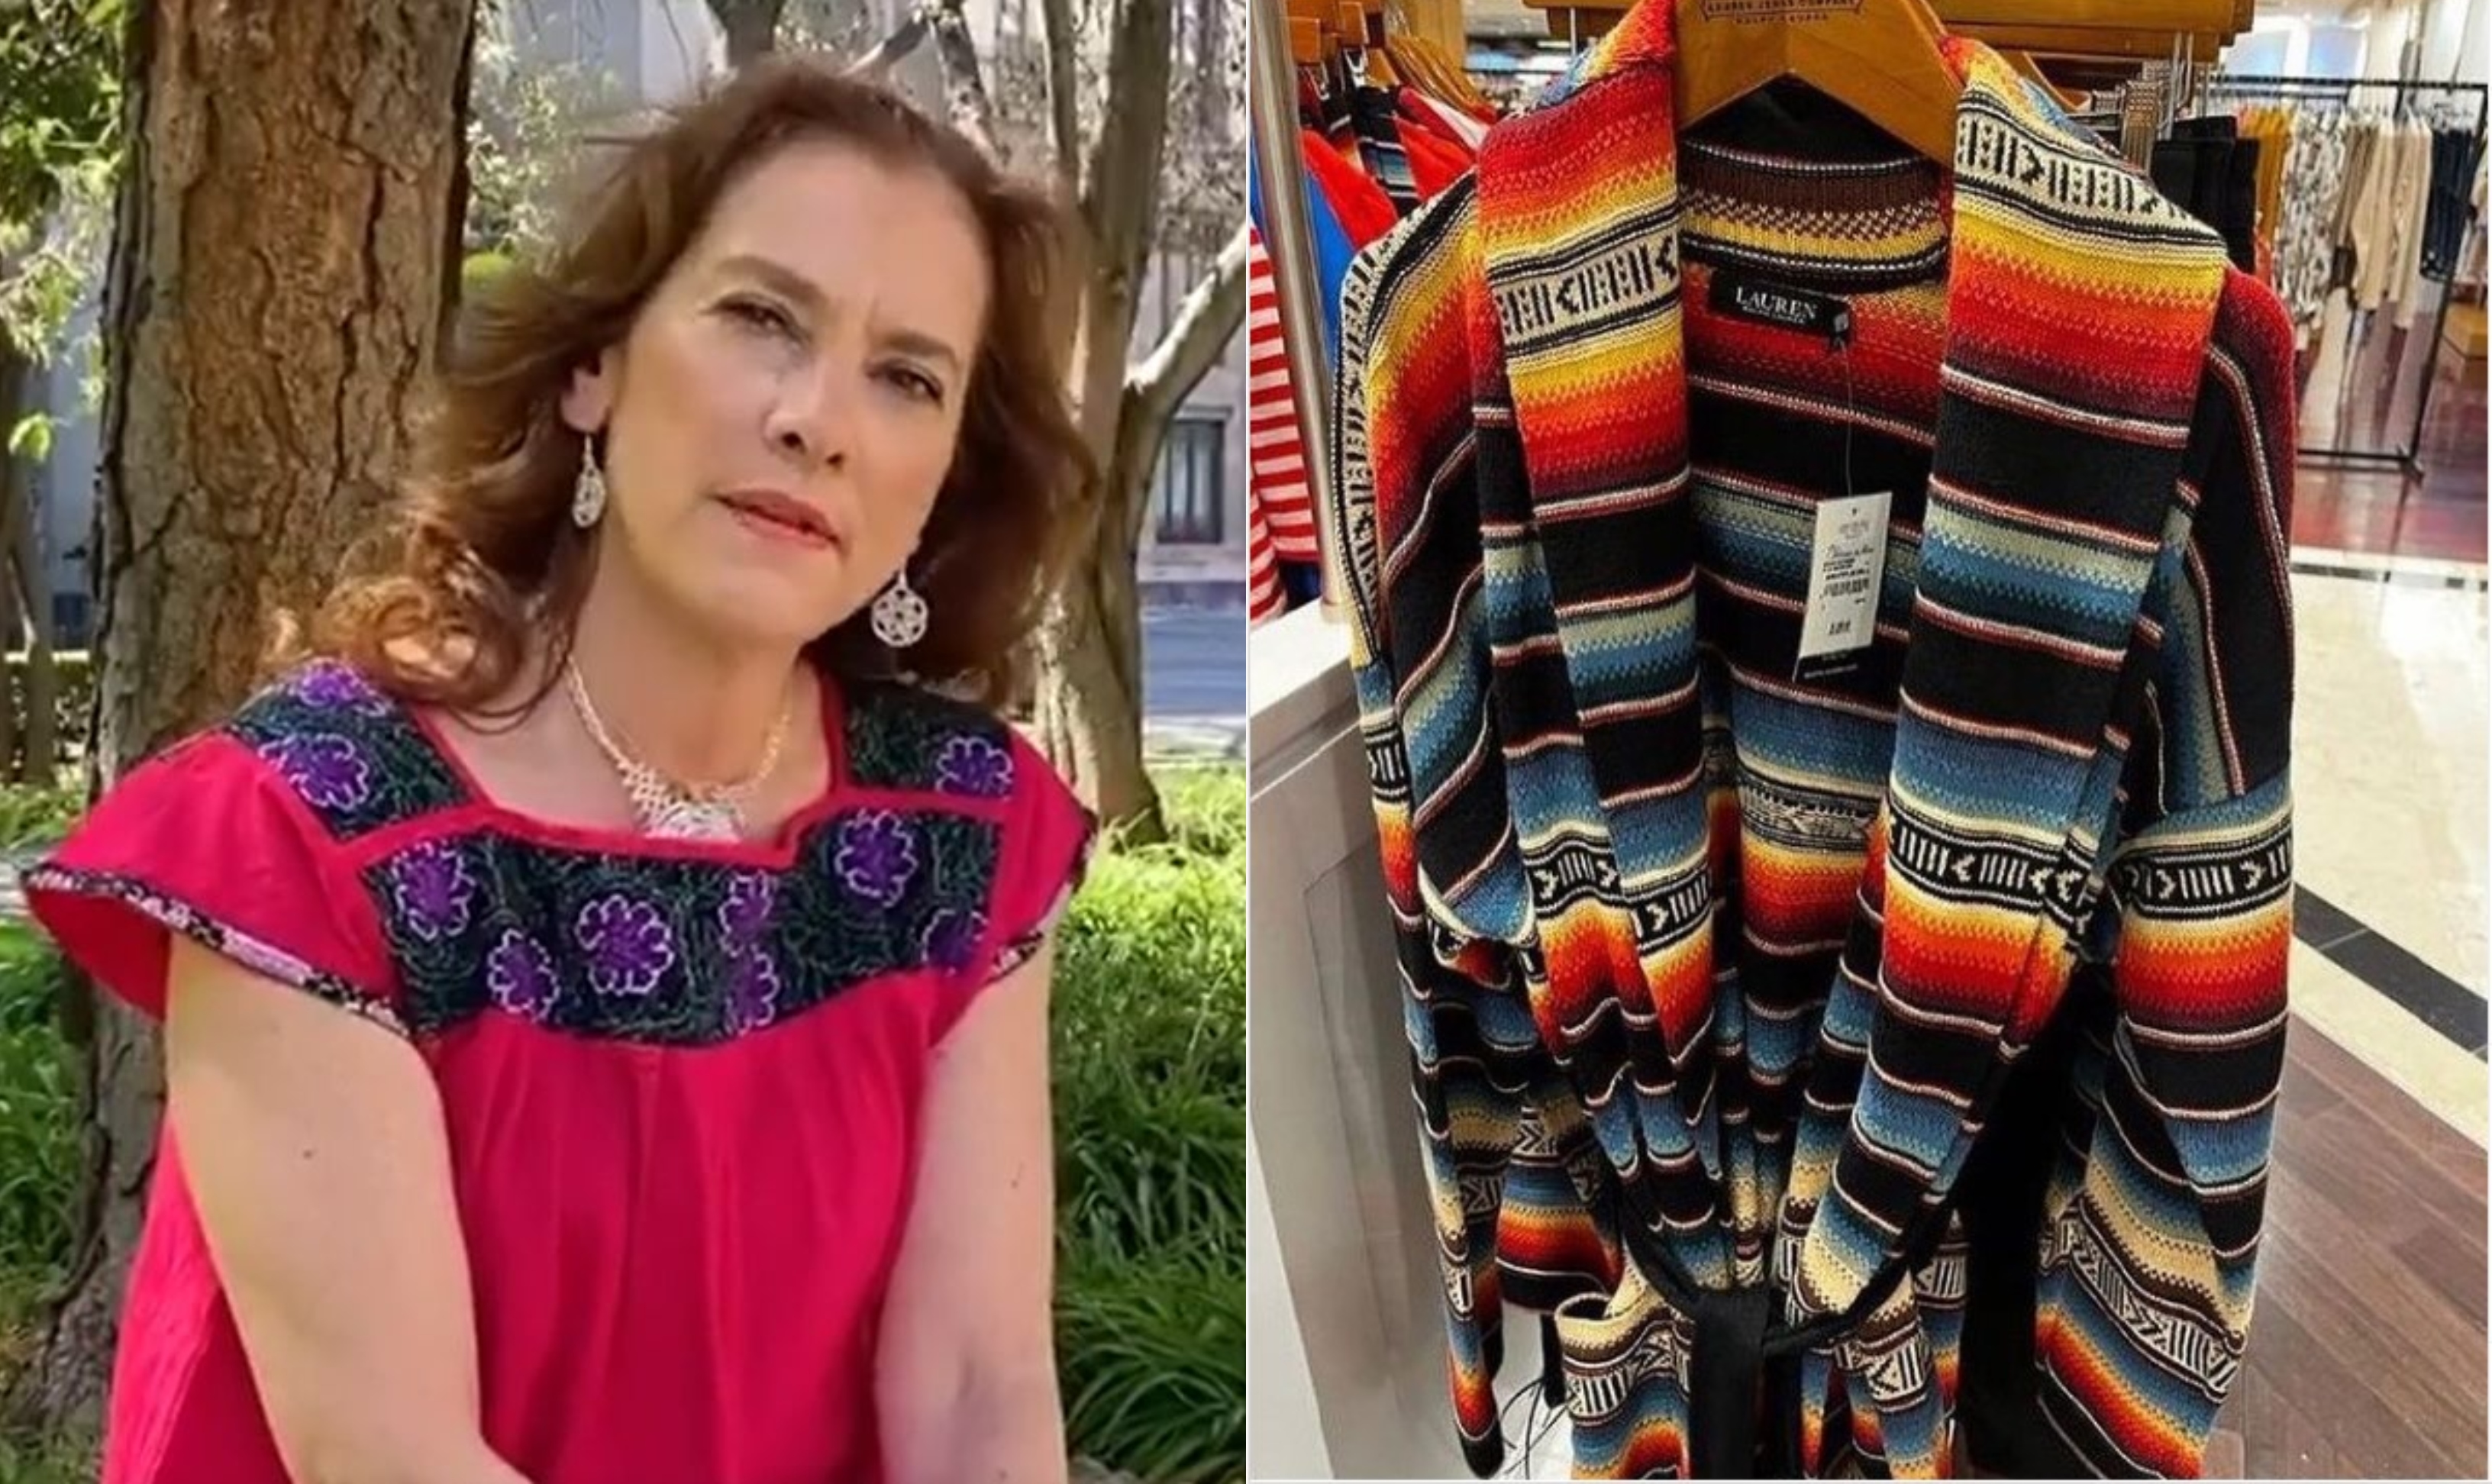 La académica acusó a la marca de plagiar diseños textiles originarios de pueblos mexicanos (Foto: Instagram / @beatrizgutierrezmuller)